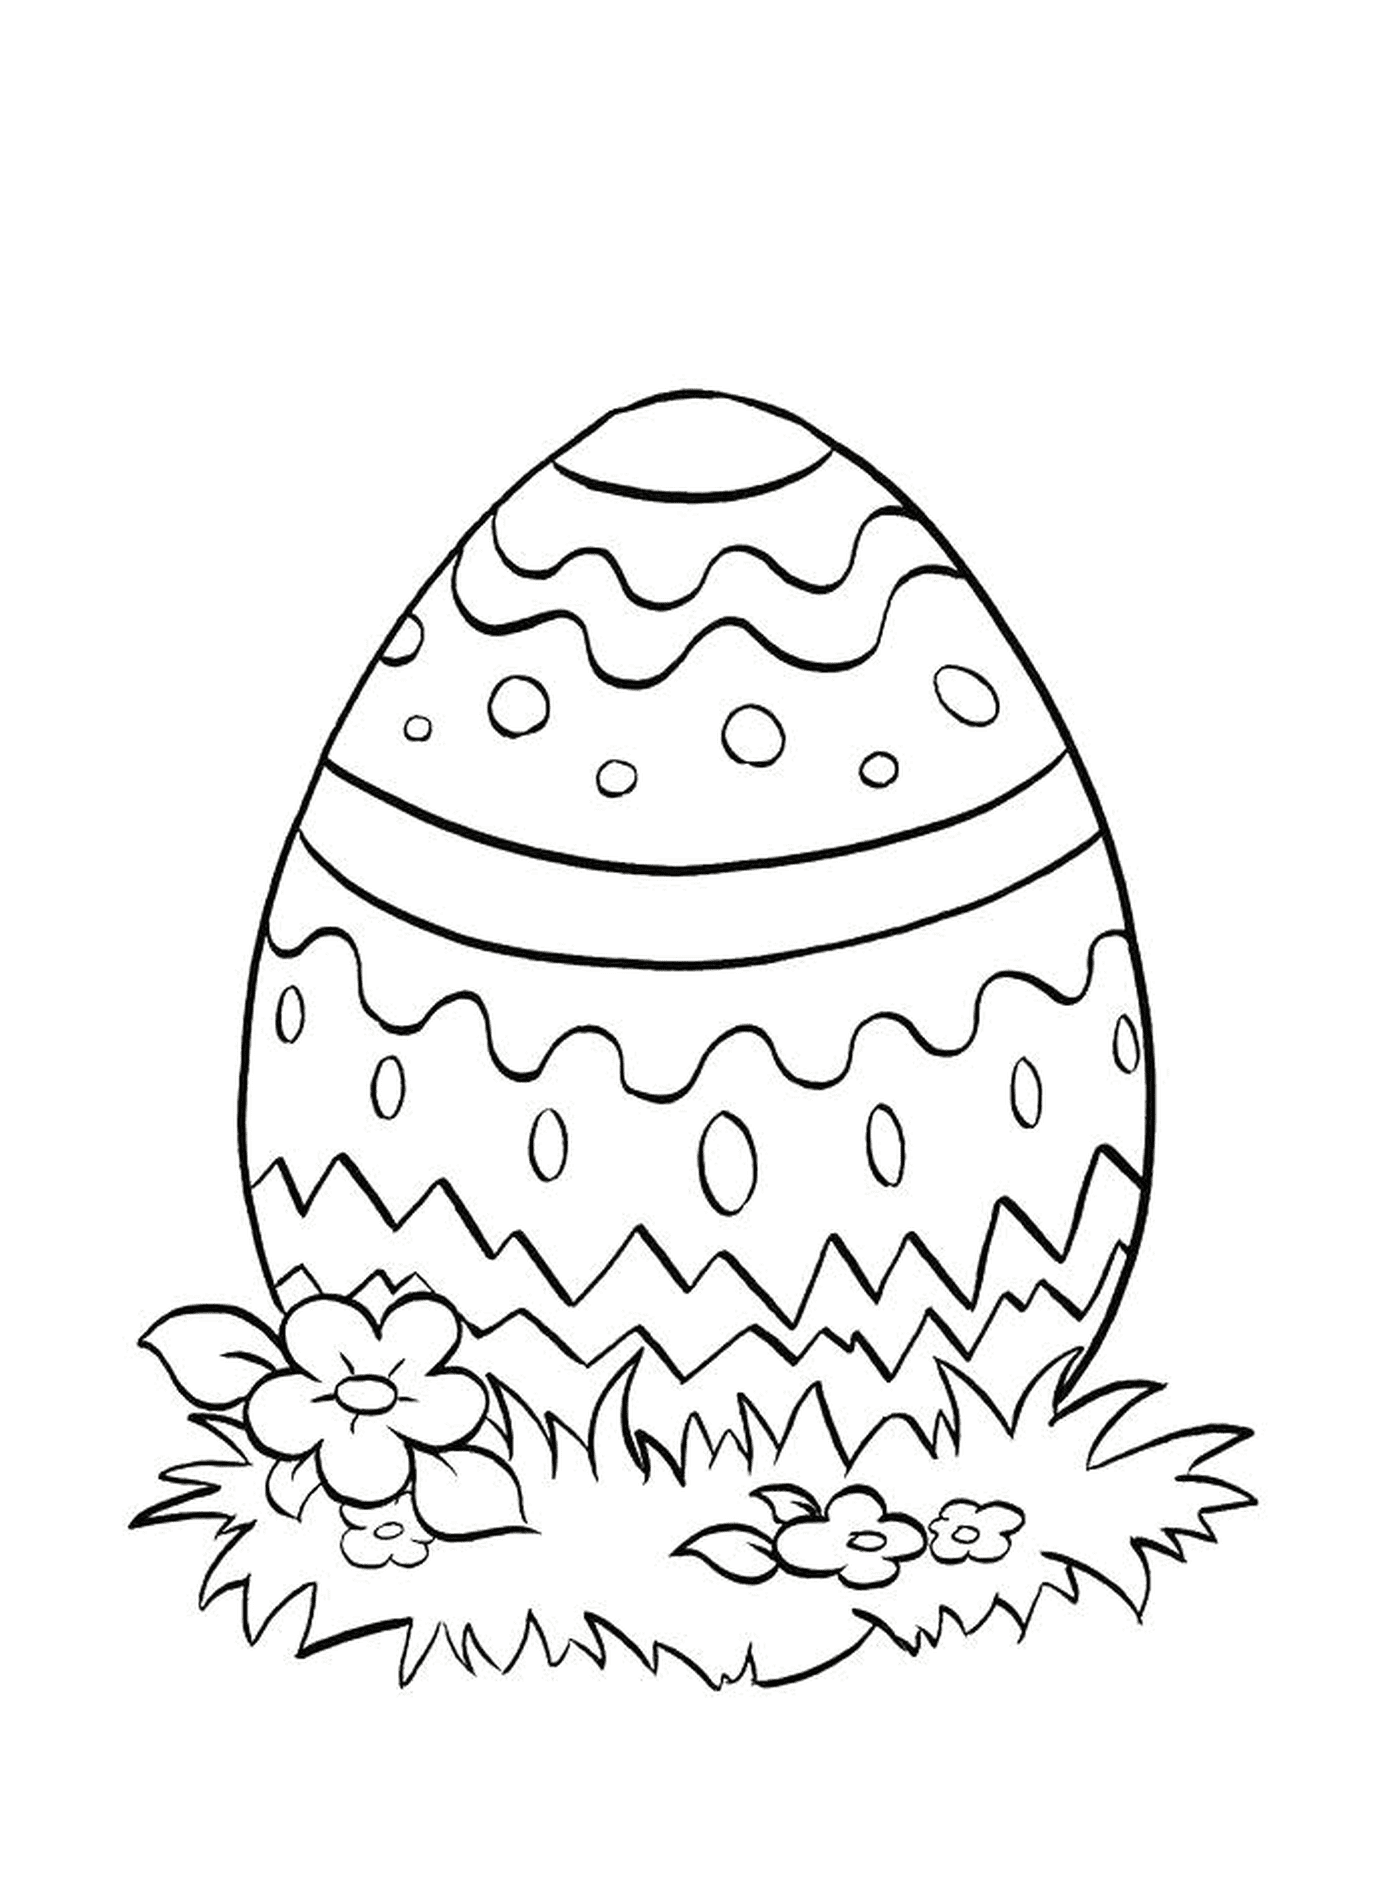  Пасхальное яйцо, уложенное в траву 